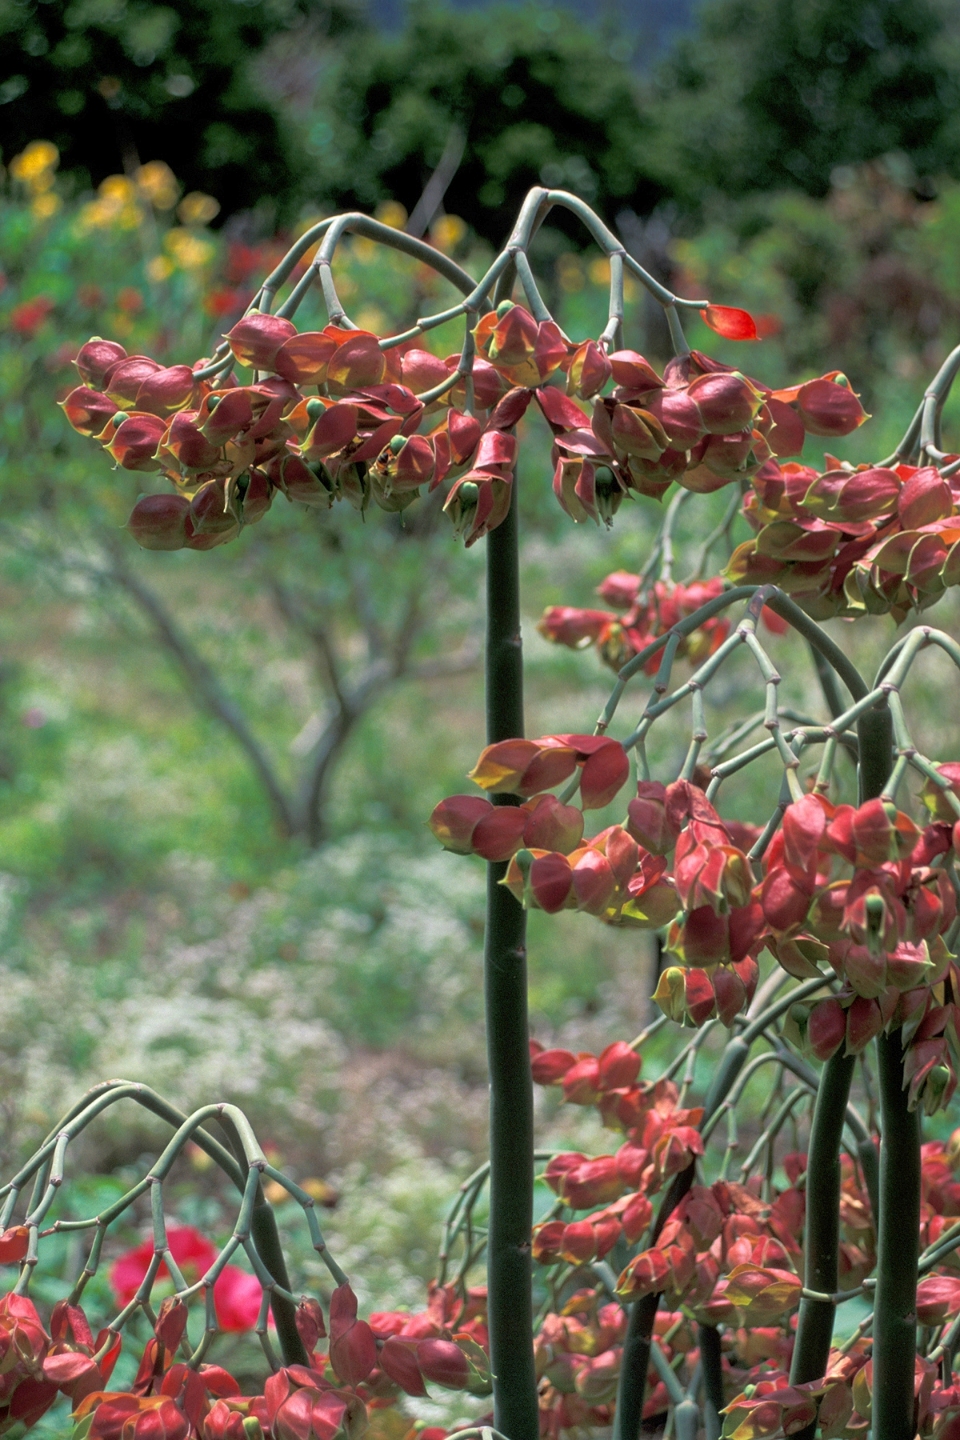 Euphorbia bracteata